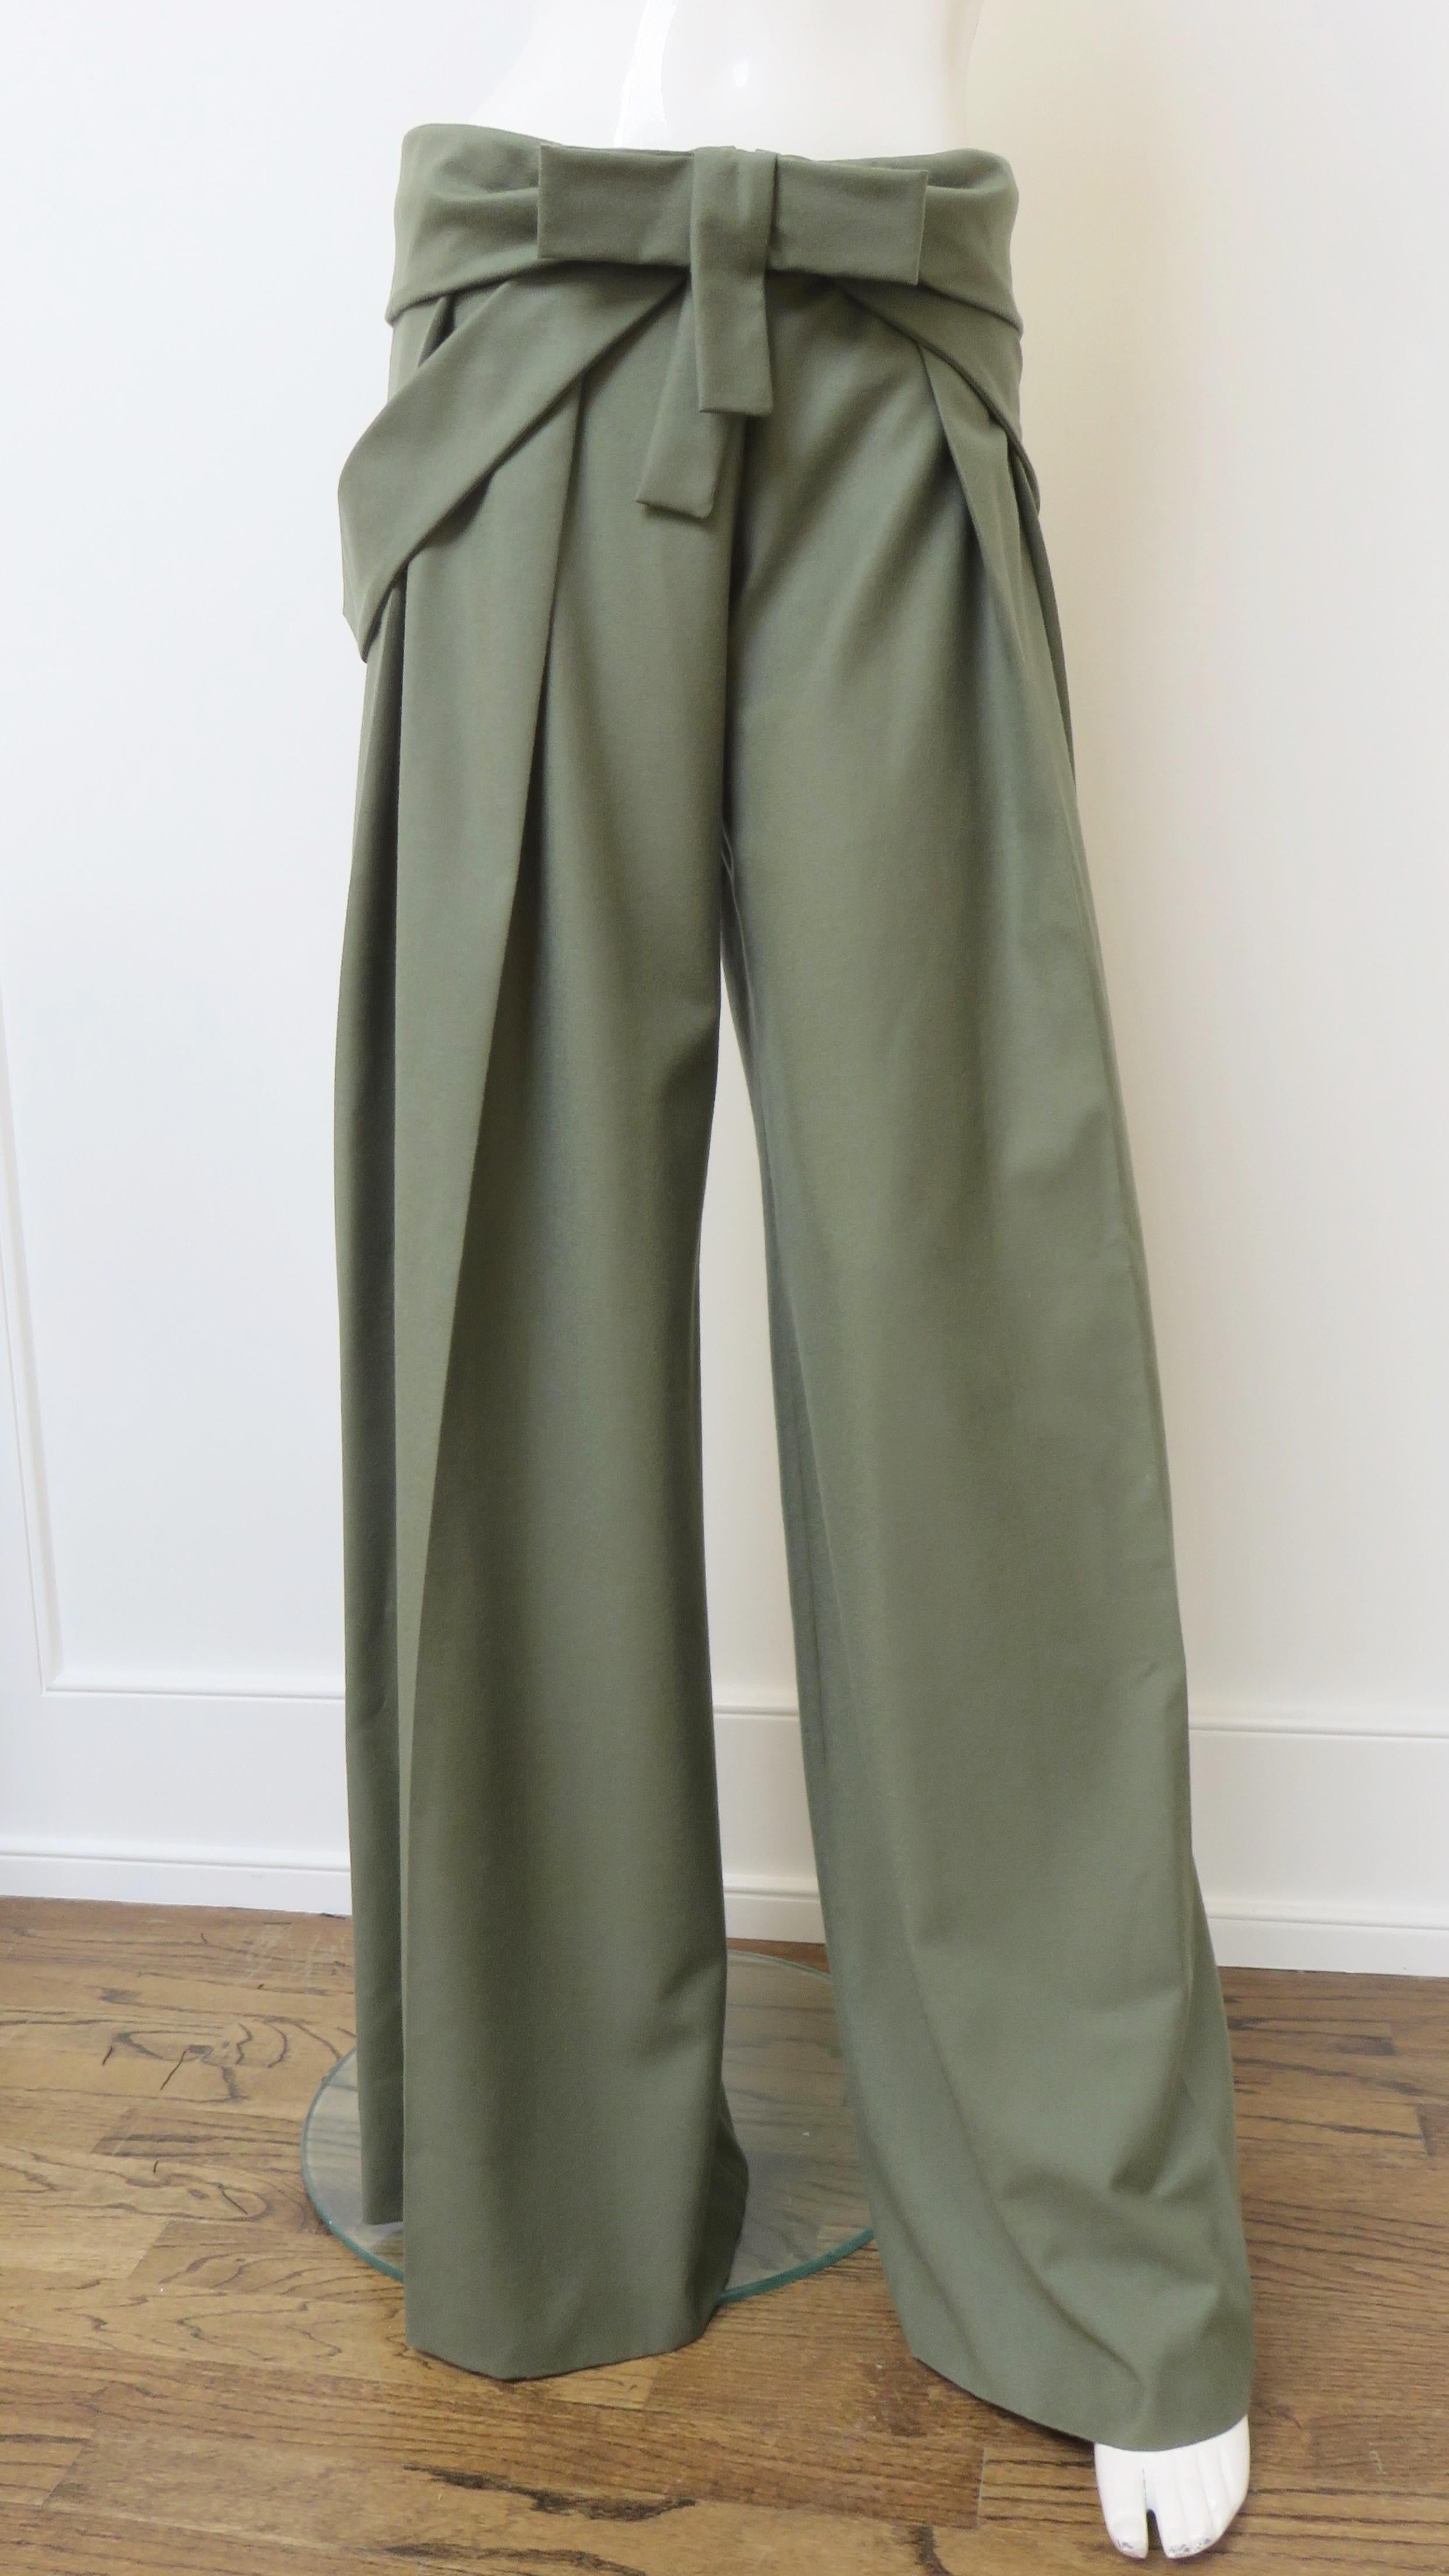 Magnifique pantalon large en cachemire vert, signé Alexander Mcqueen.  Ils sont de taille moyenne et comportent une ceinture froncée avec un nœud sur le devant, une fermeture à glissière sur le devant et des bandes qui passent dans des ouvertures